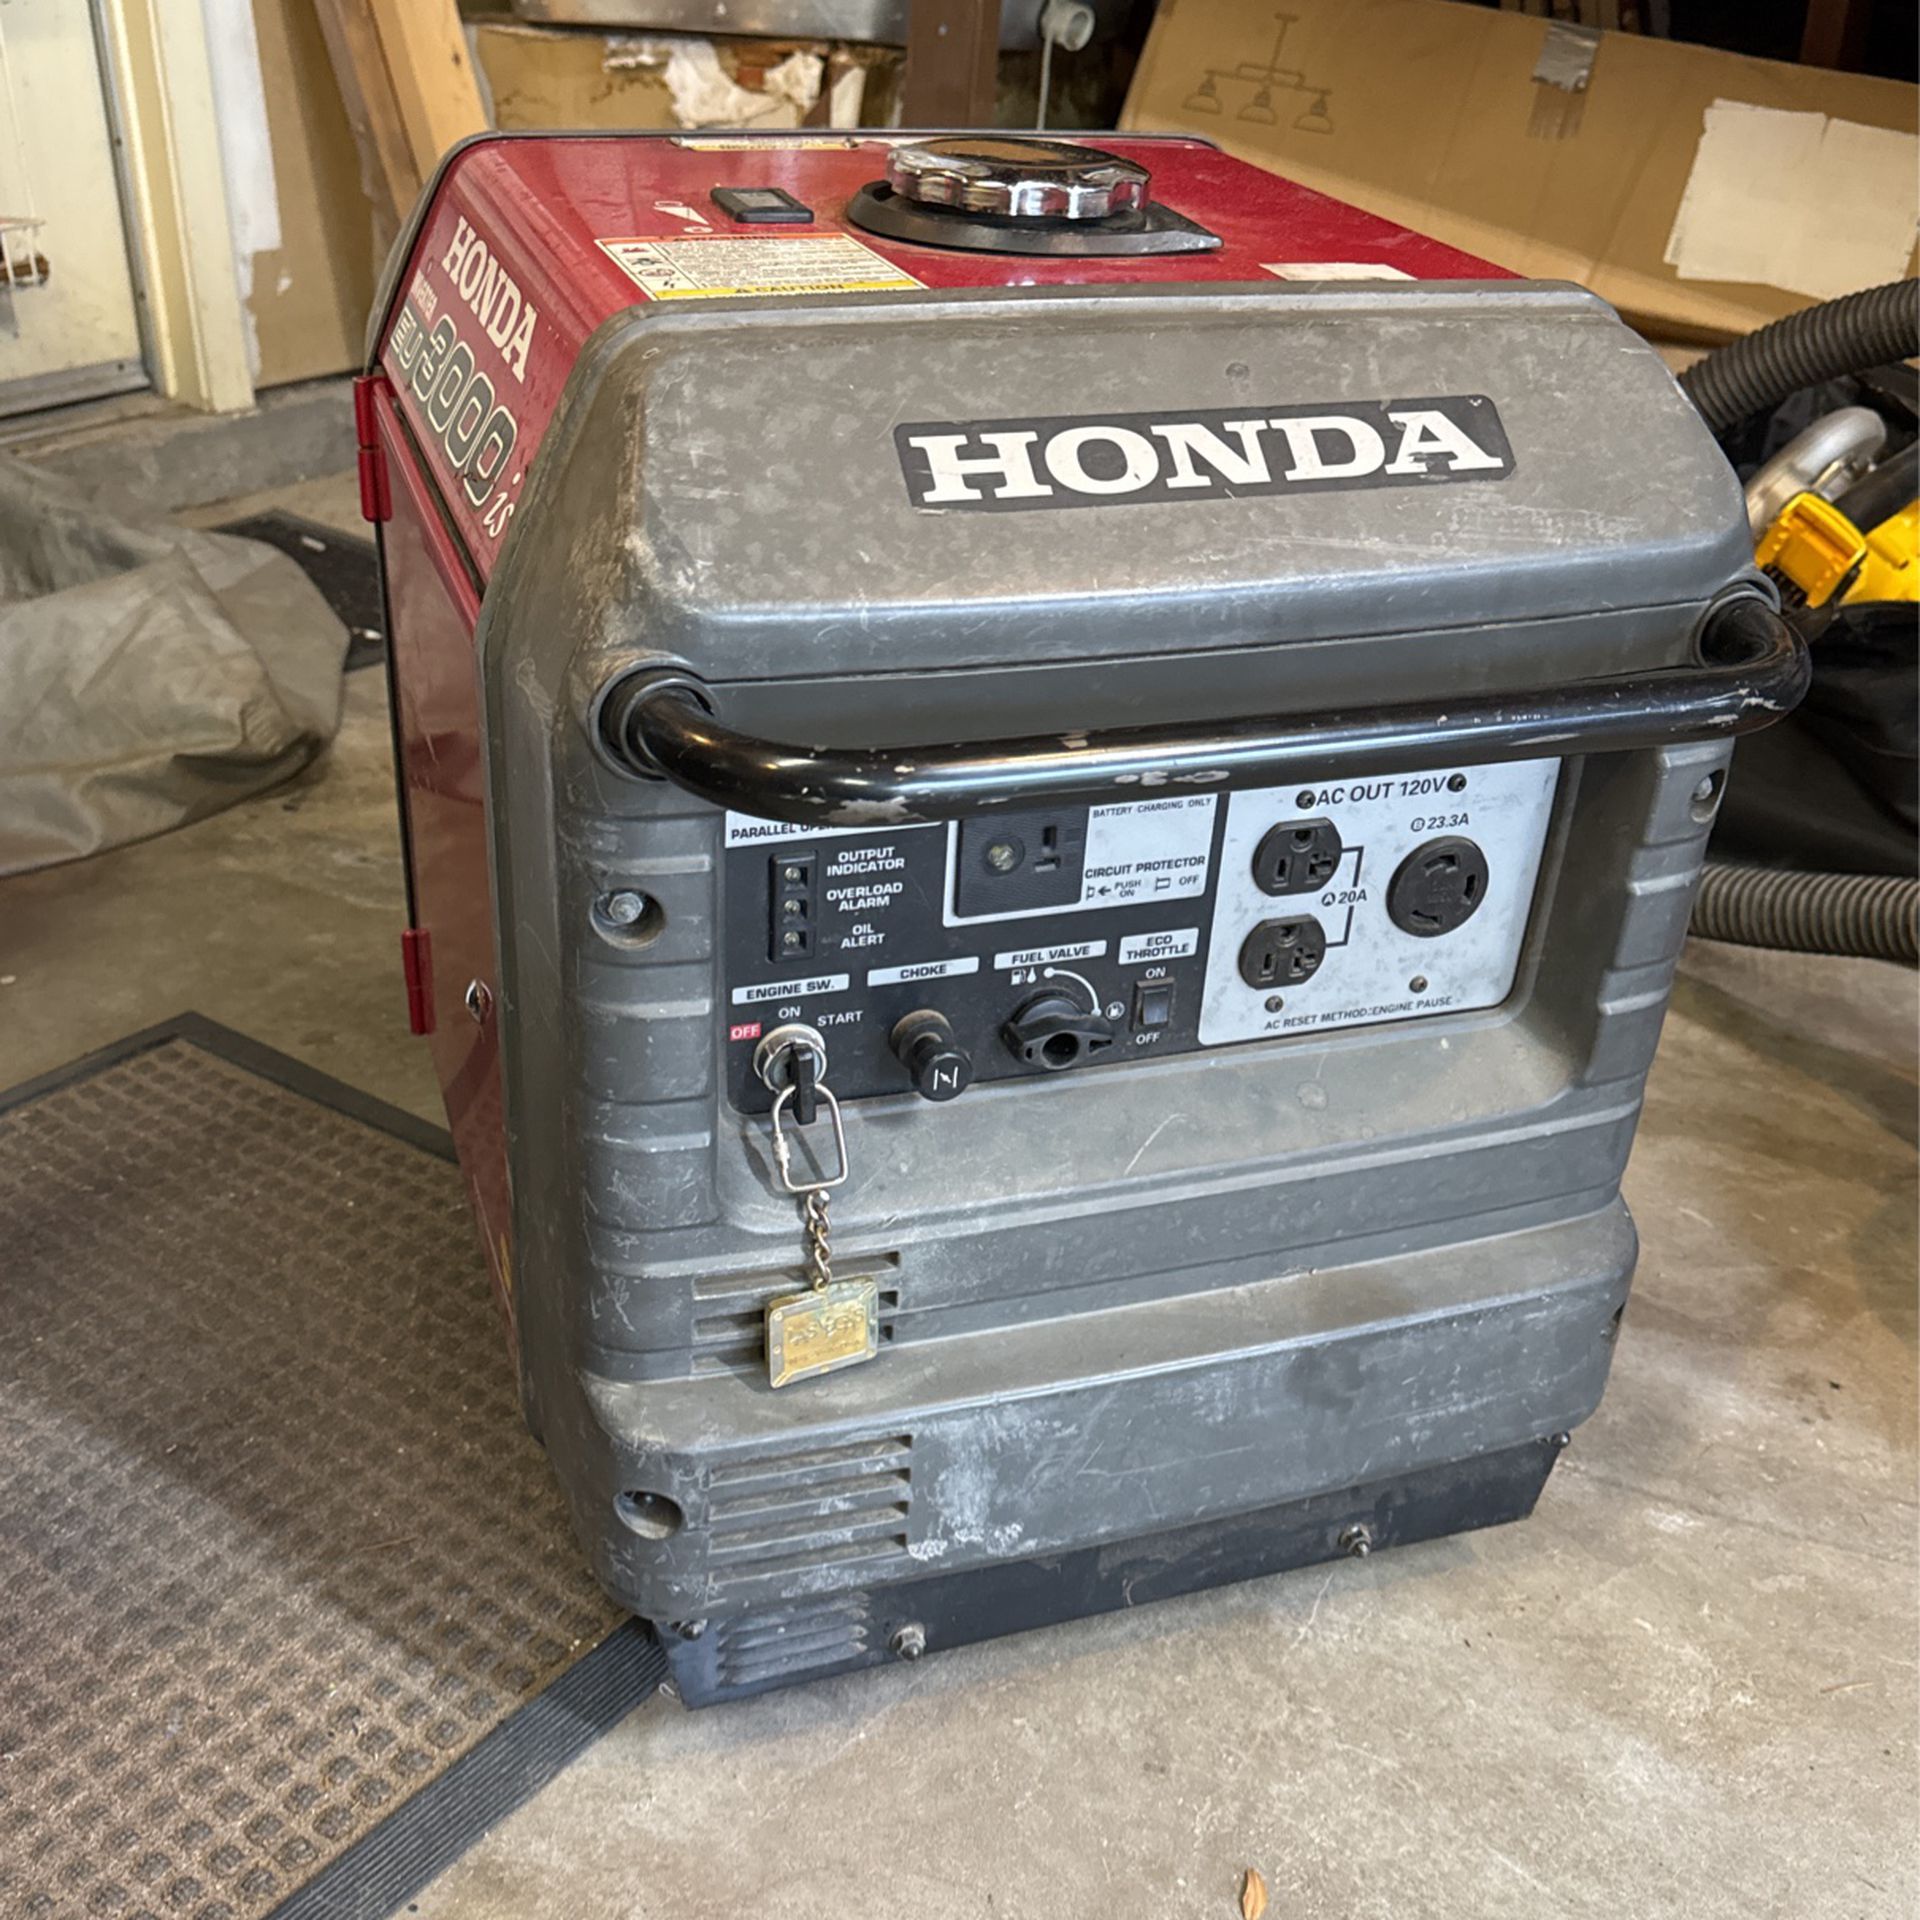 Honda EU 3000is generator